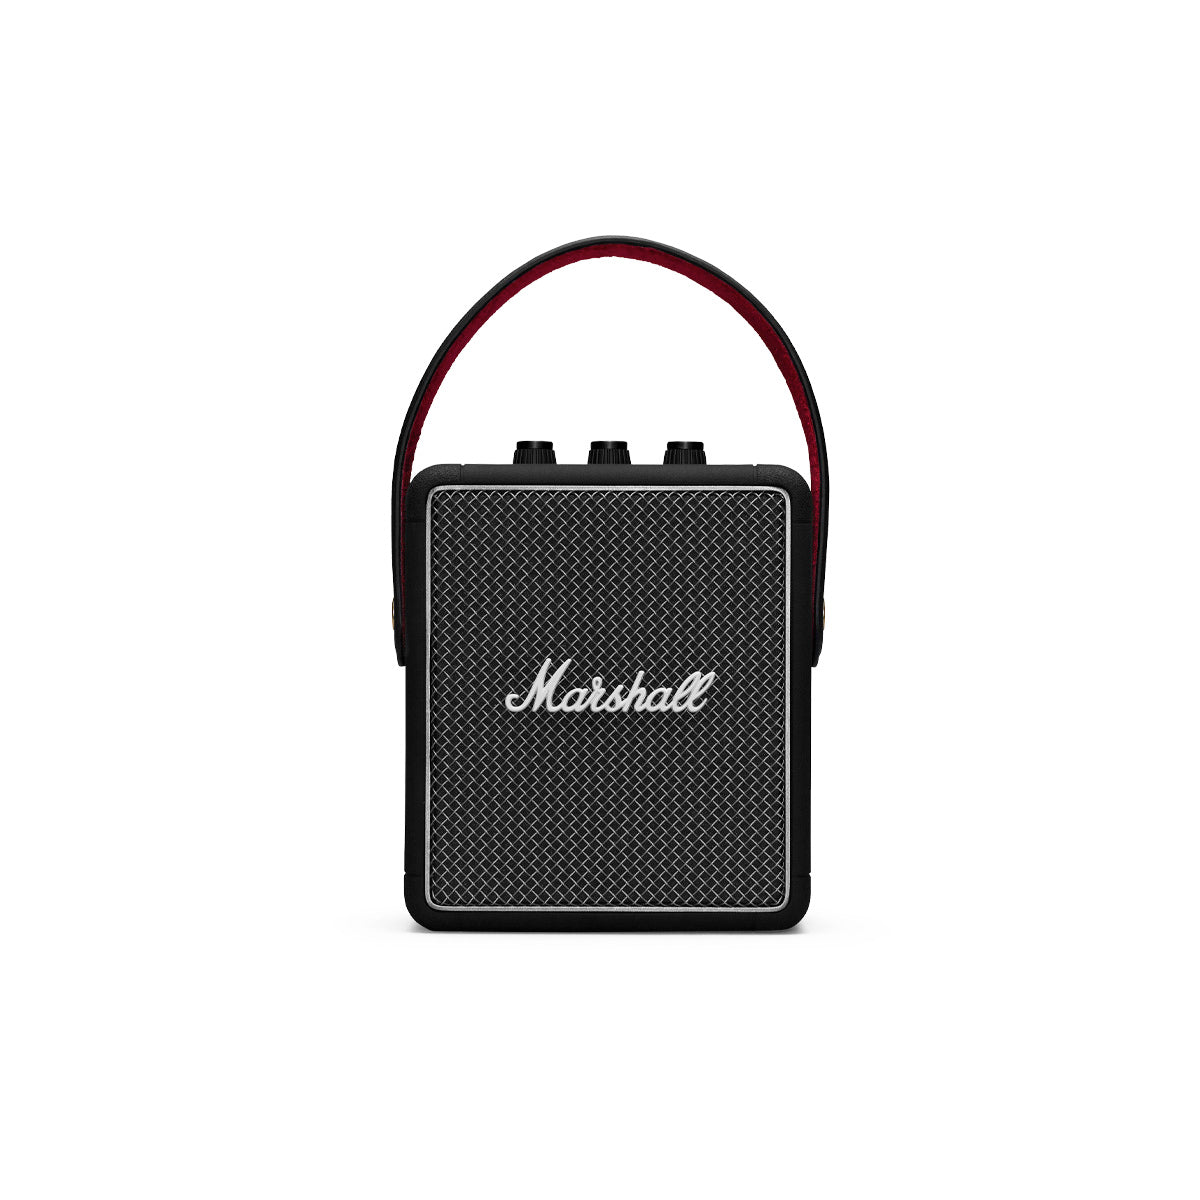 Marshall stockwell ii portable bluetooth speaker - Audio Influence Australia 